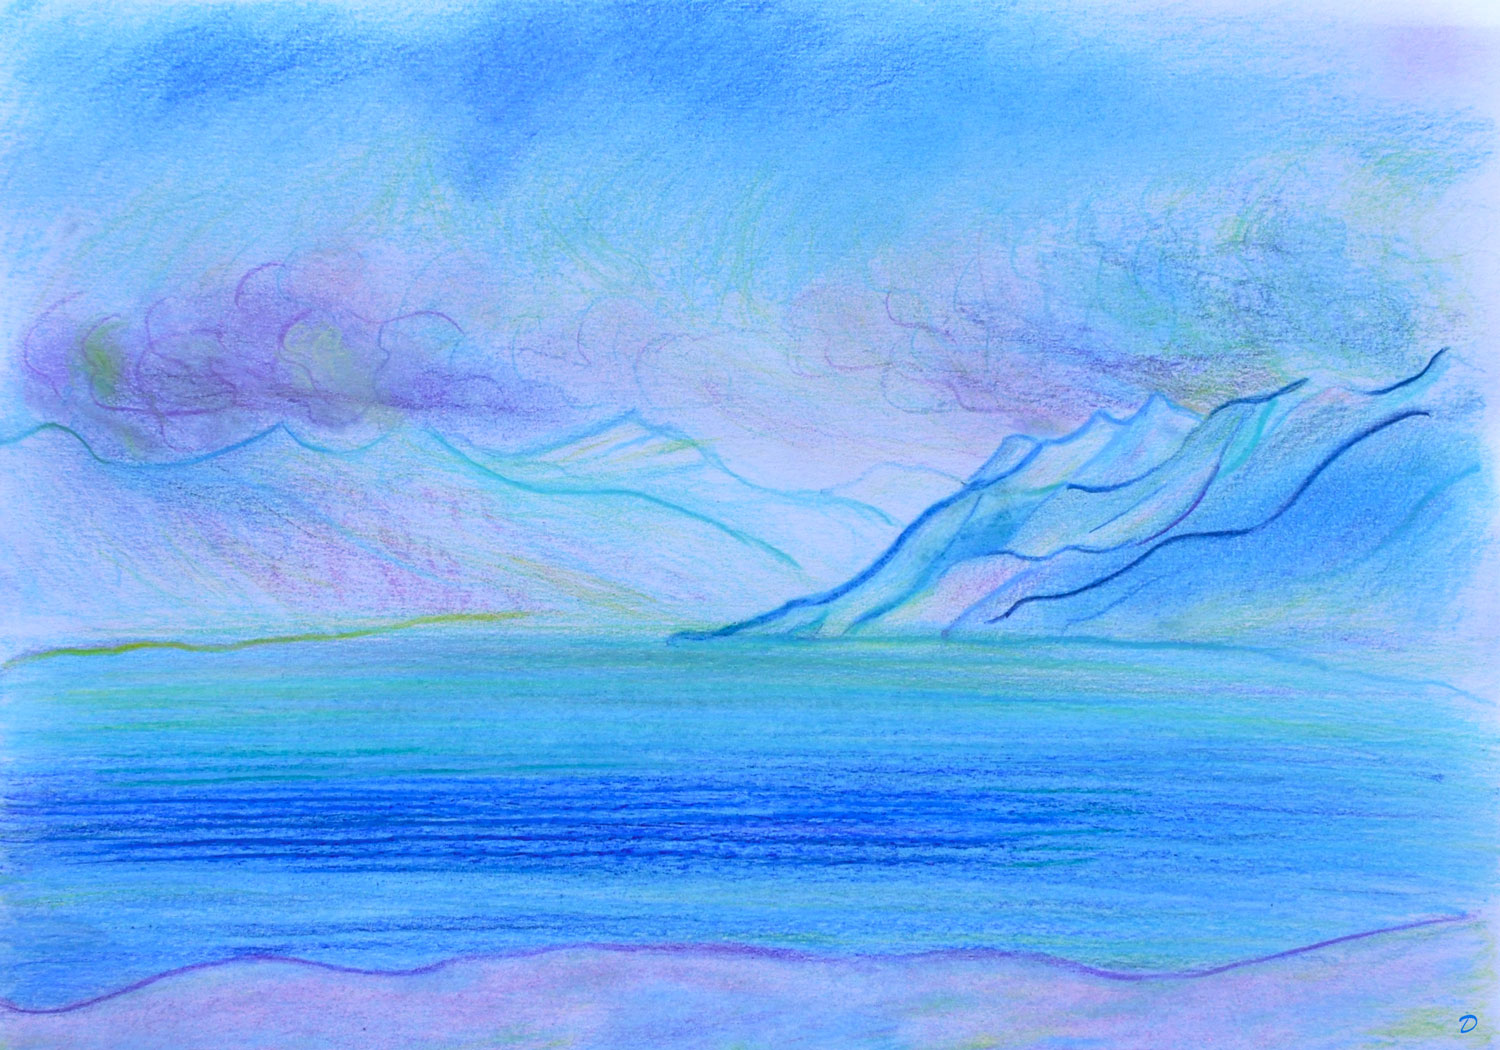 Lac Léman, St Prex, 34. Crayon de couleur et pastel sur papier, 21x29, 2022